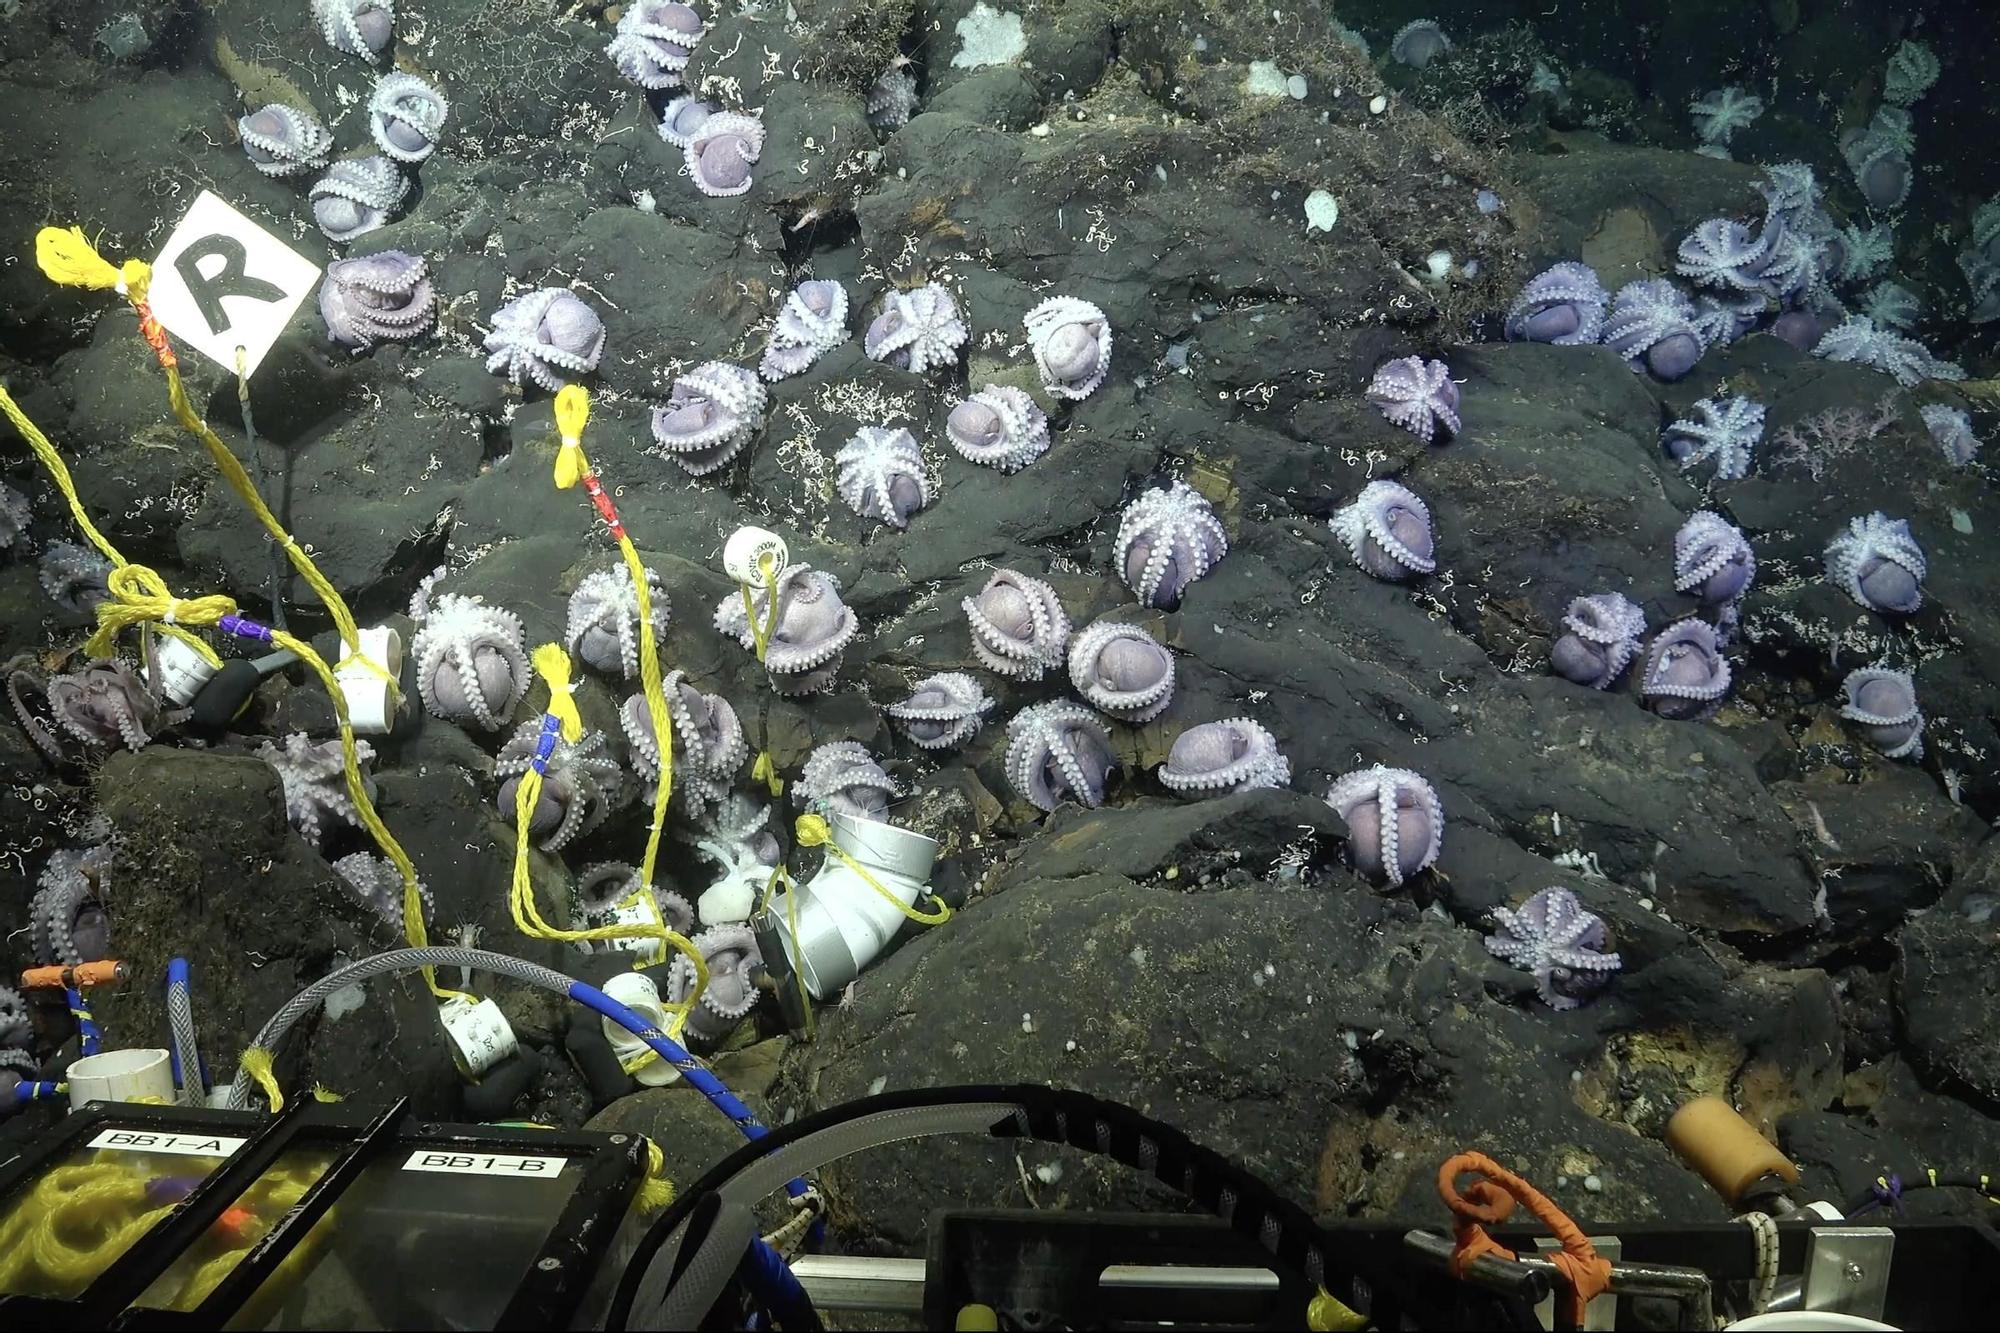 Las nuevas especies de pulpos hallados por un oceanográfico con factura viguesa